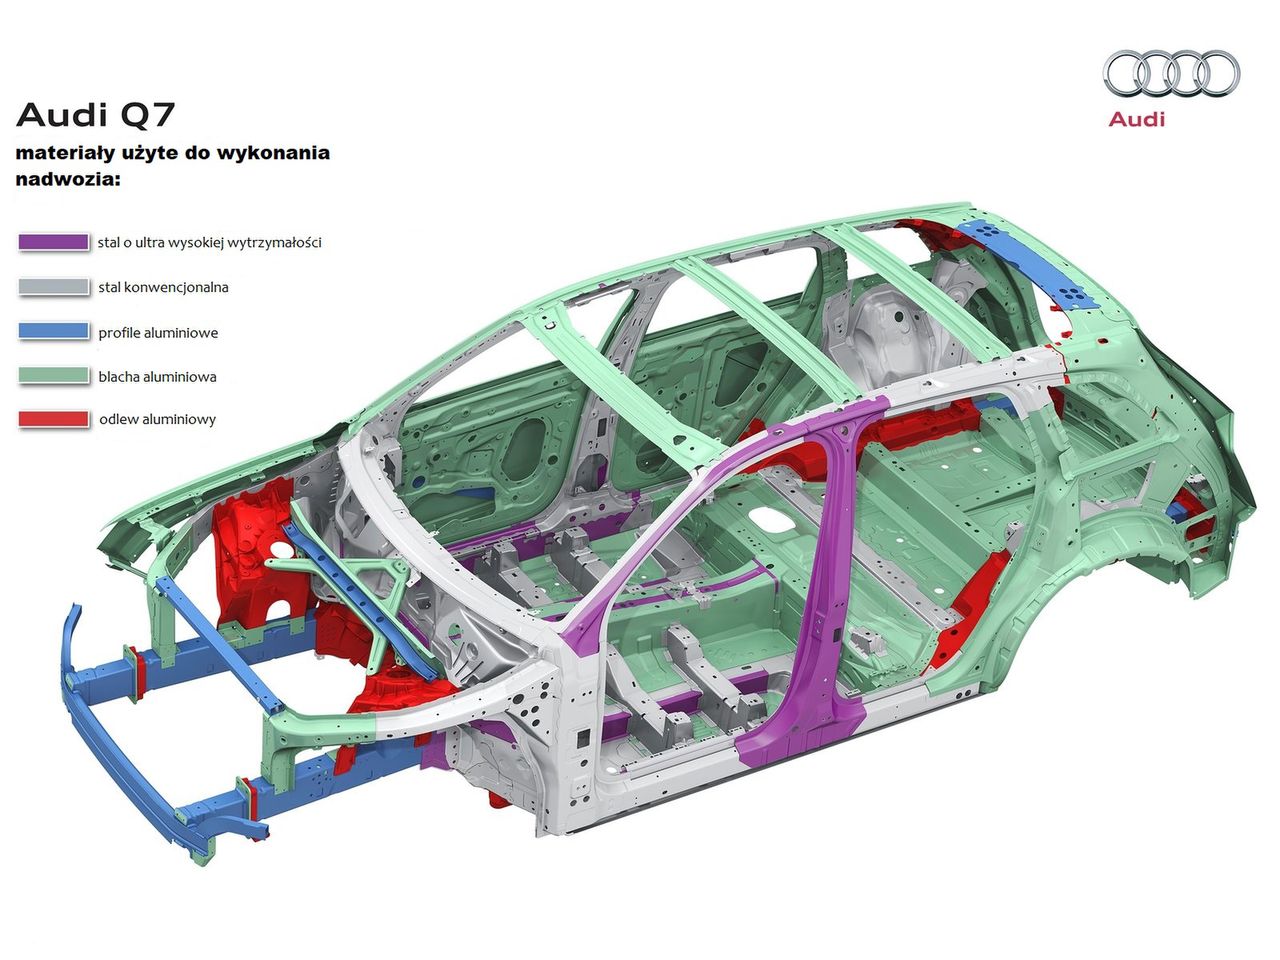 Konstrukcja nadwozia Audi Q7